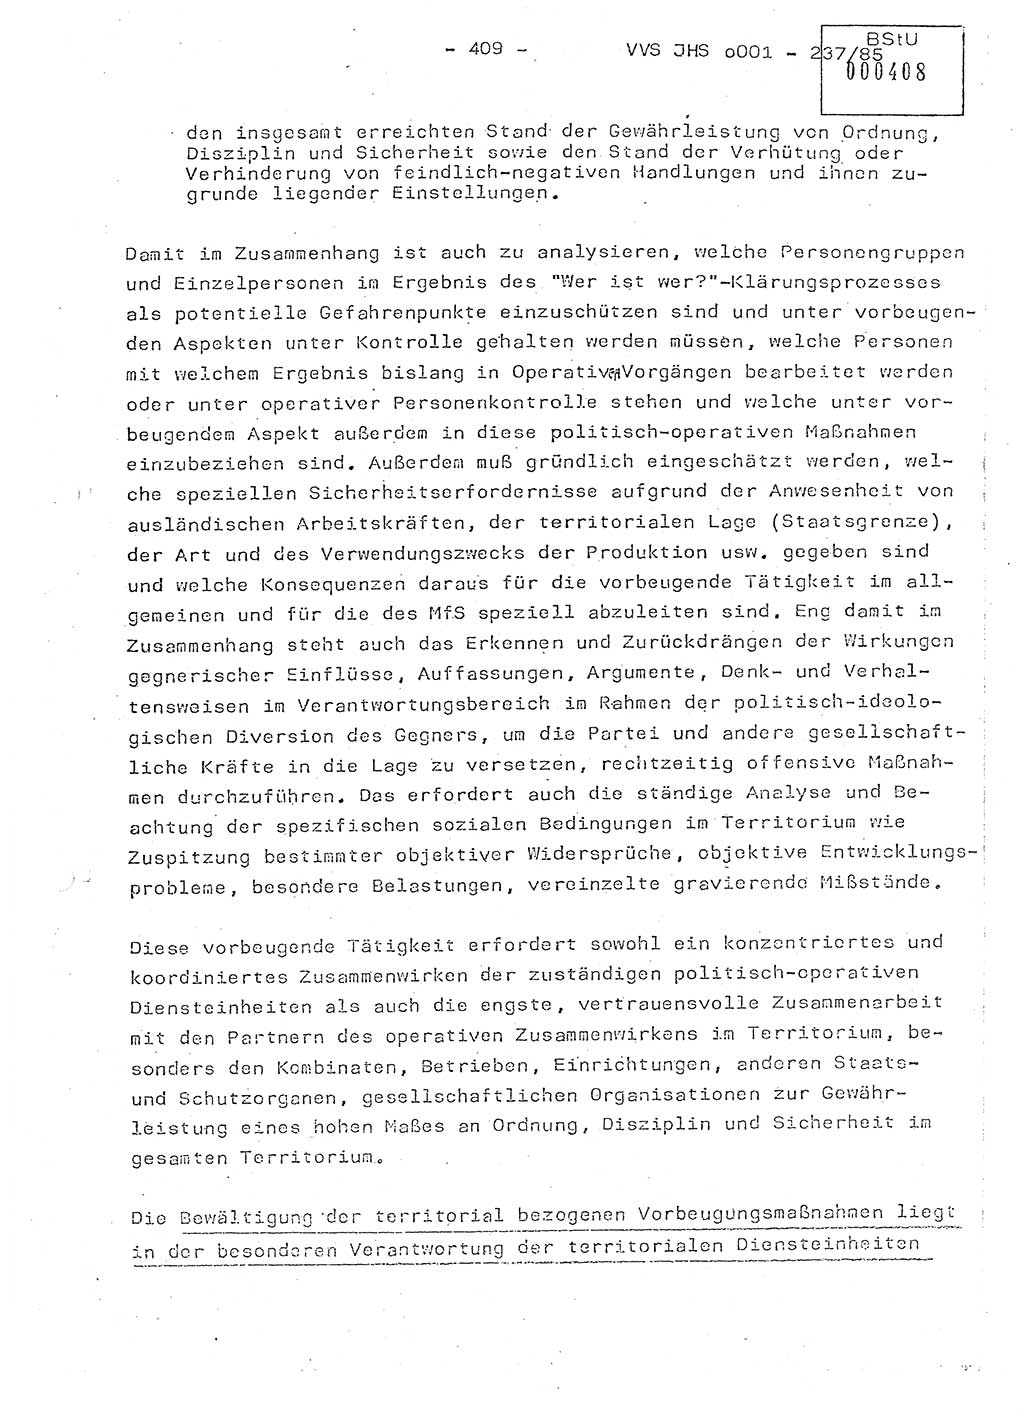 Dissertation Oberstleutnant Peter Jakulski (JHS), Oberstleutnat Christian Rudolph (HA Ⅸ), Major Horst Böttger (ZMD), Major Wolfgang Grüneberg (JHS), Major Albert Meutsch (JHS), Ministerium für Staatssicherheit (MfS) [Deutsche Demokratische Republik (DDR)], Juristische Hochschule (JHS), Vertrauliche Verschlußsache (VVS) o001-237/85, Potsdam 1985, Seite 409 (Diss. MfS DDR JHS VVS o001-237/85 1985, S. 409)